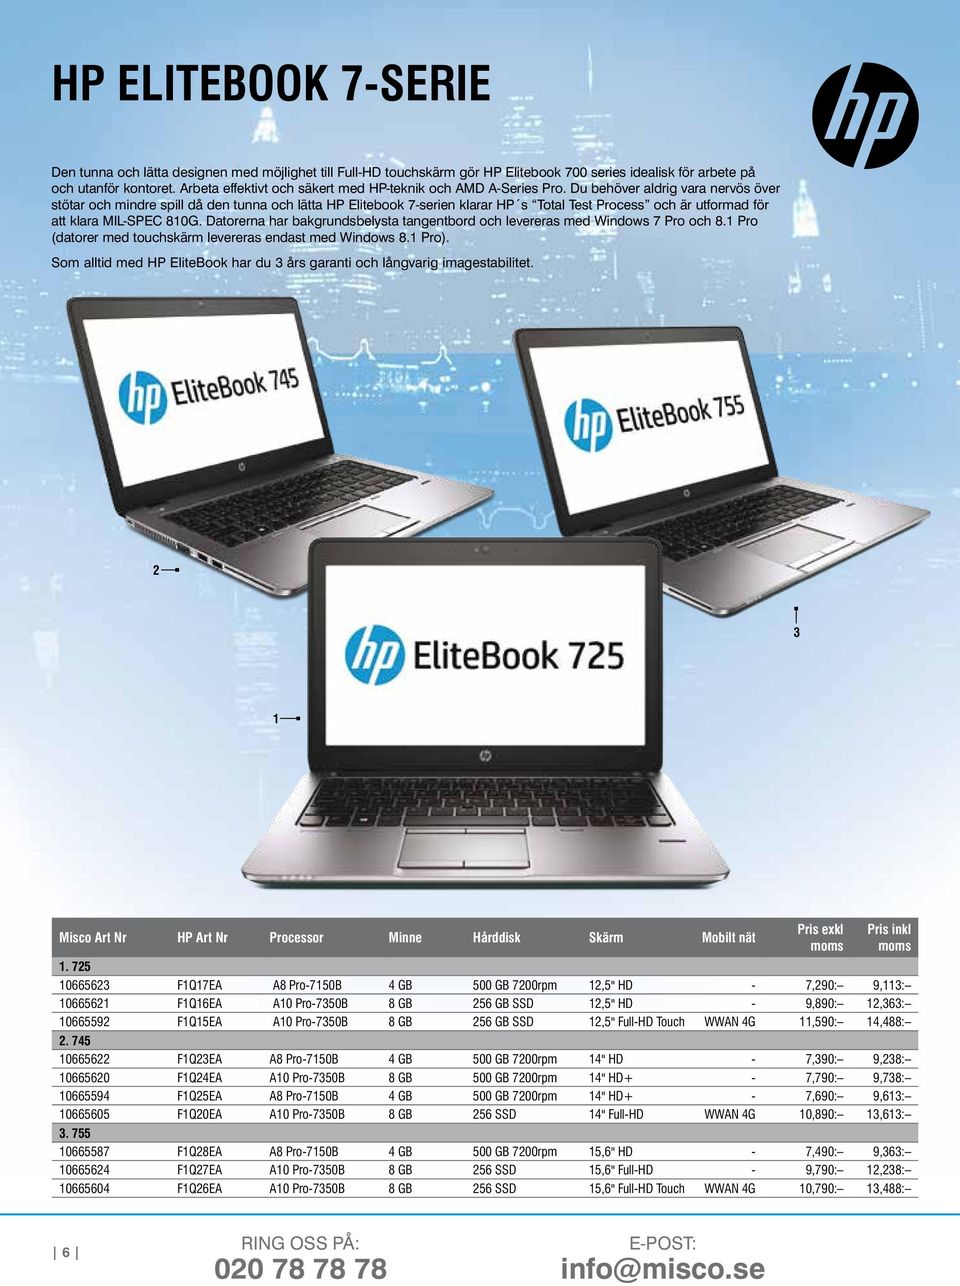 Du behöver aldrig vara nervös över stötar och mindre spill då den tunna och lätta HP Elitebook 7-serien klarar HP s Total Test Process och är utformad för att klara MIL-SPEC 810G.